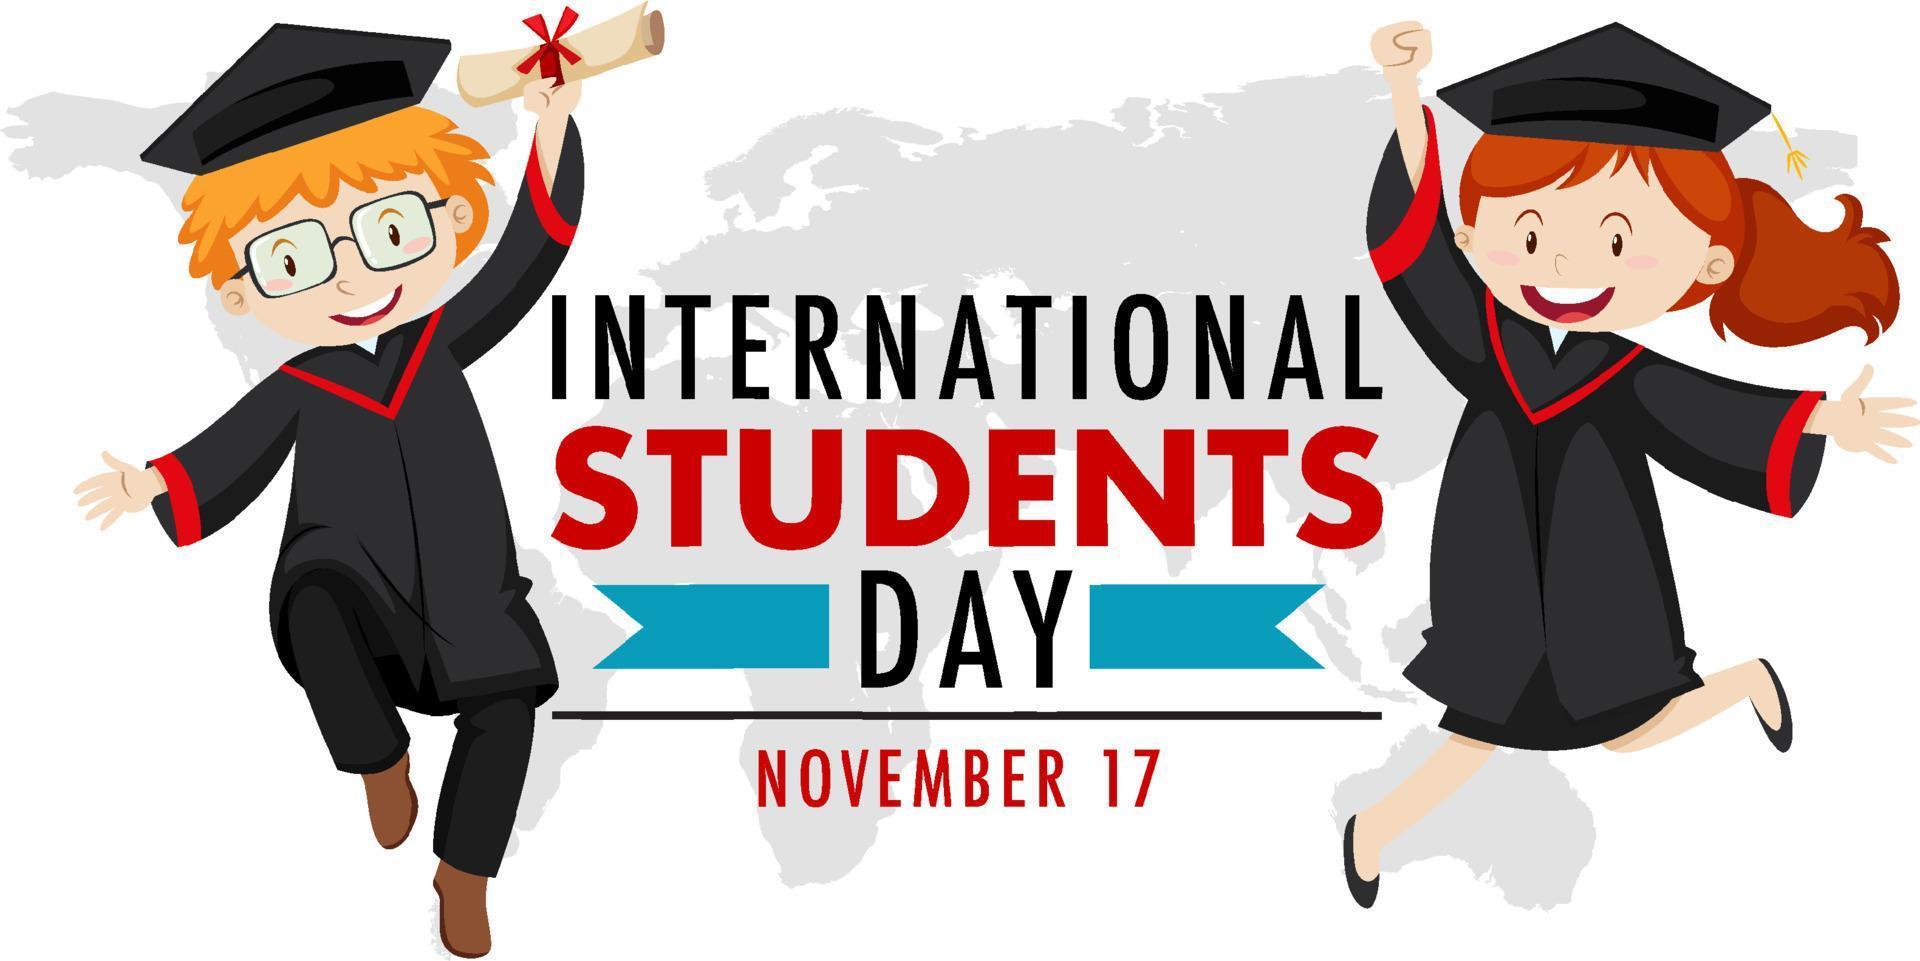 conception de bannière de la journée internationale des étudiants vecteur